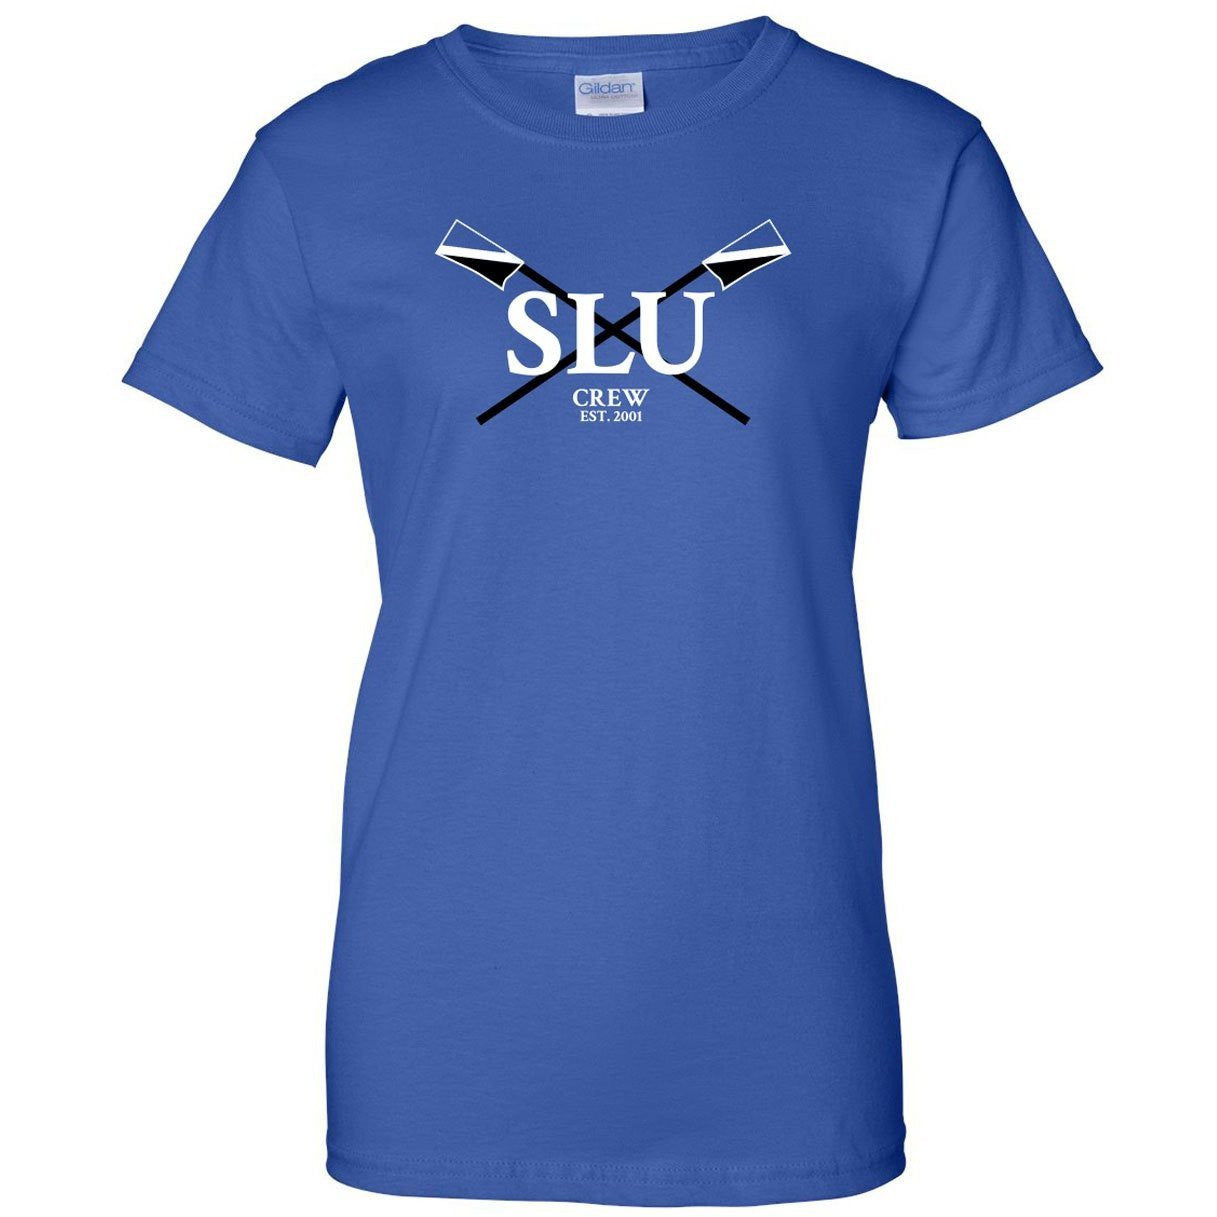 100% Cotton SLU Crew Women's Team Spirit T-Shirt